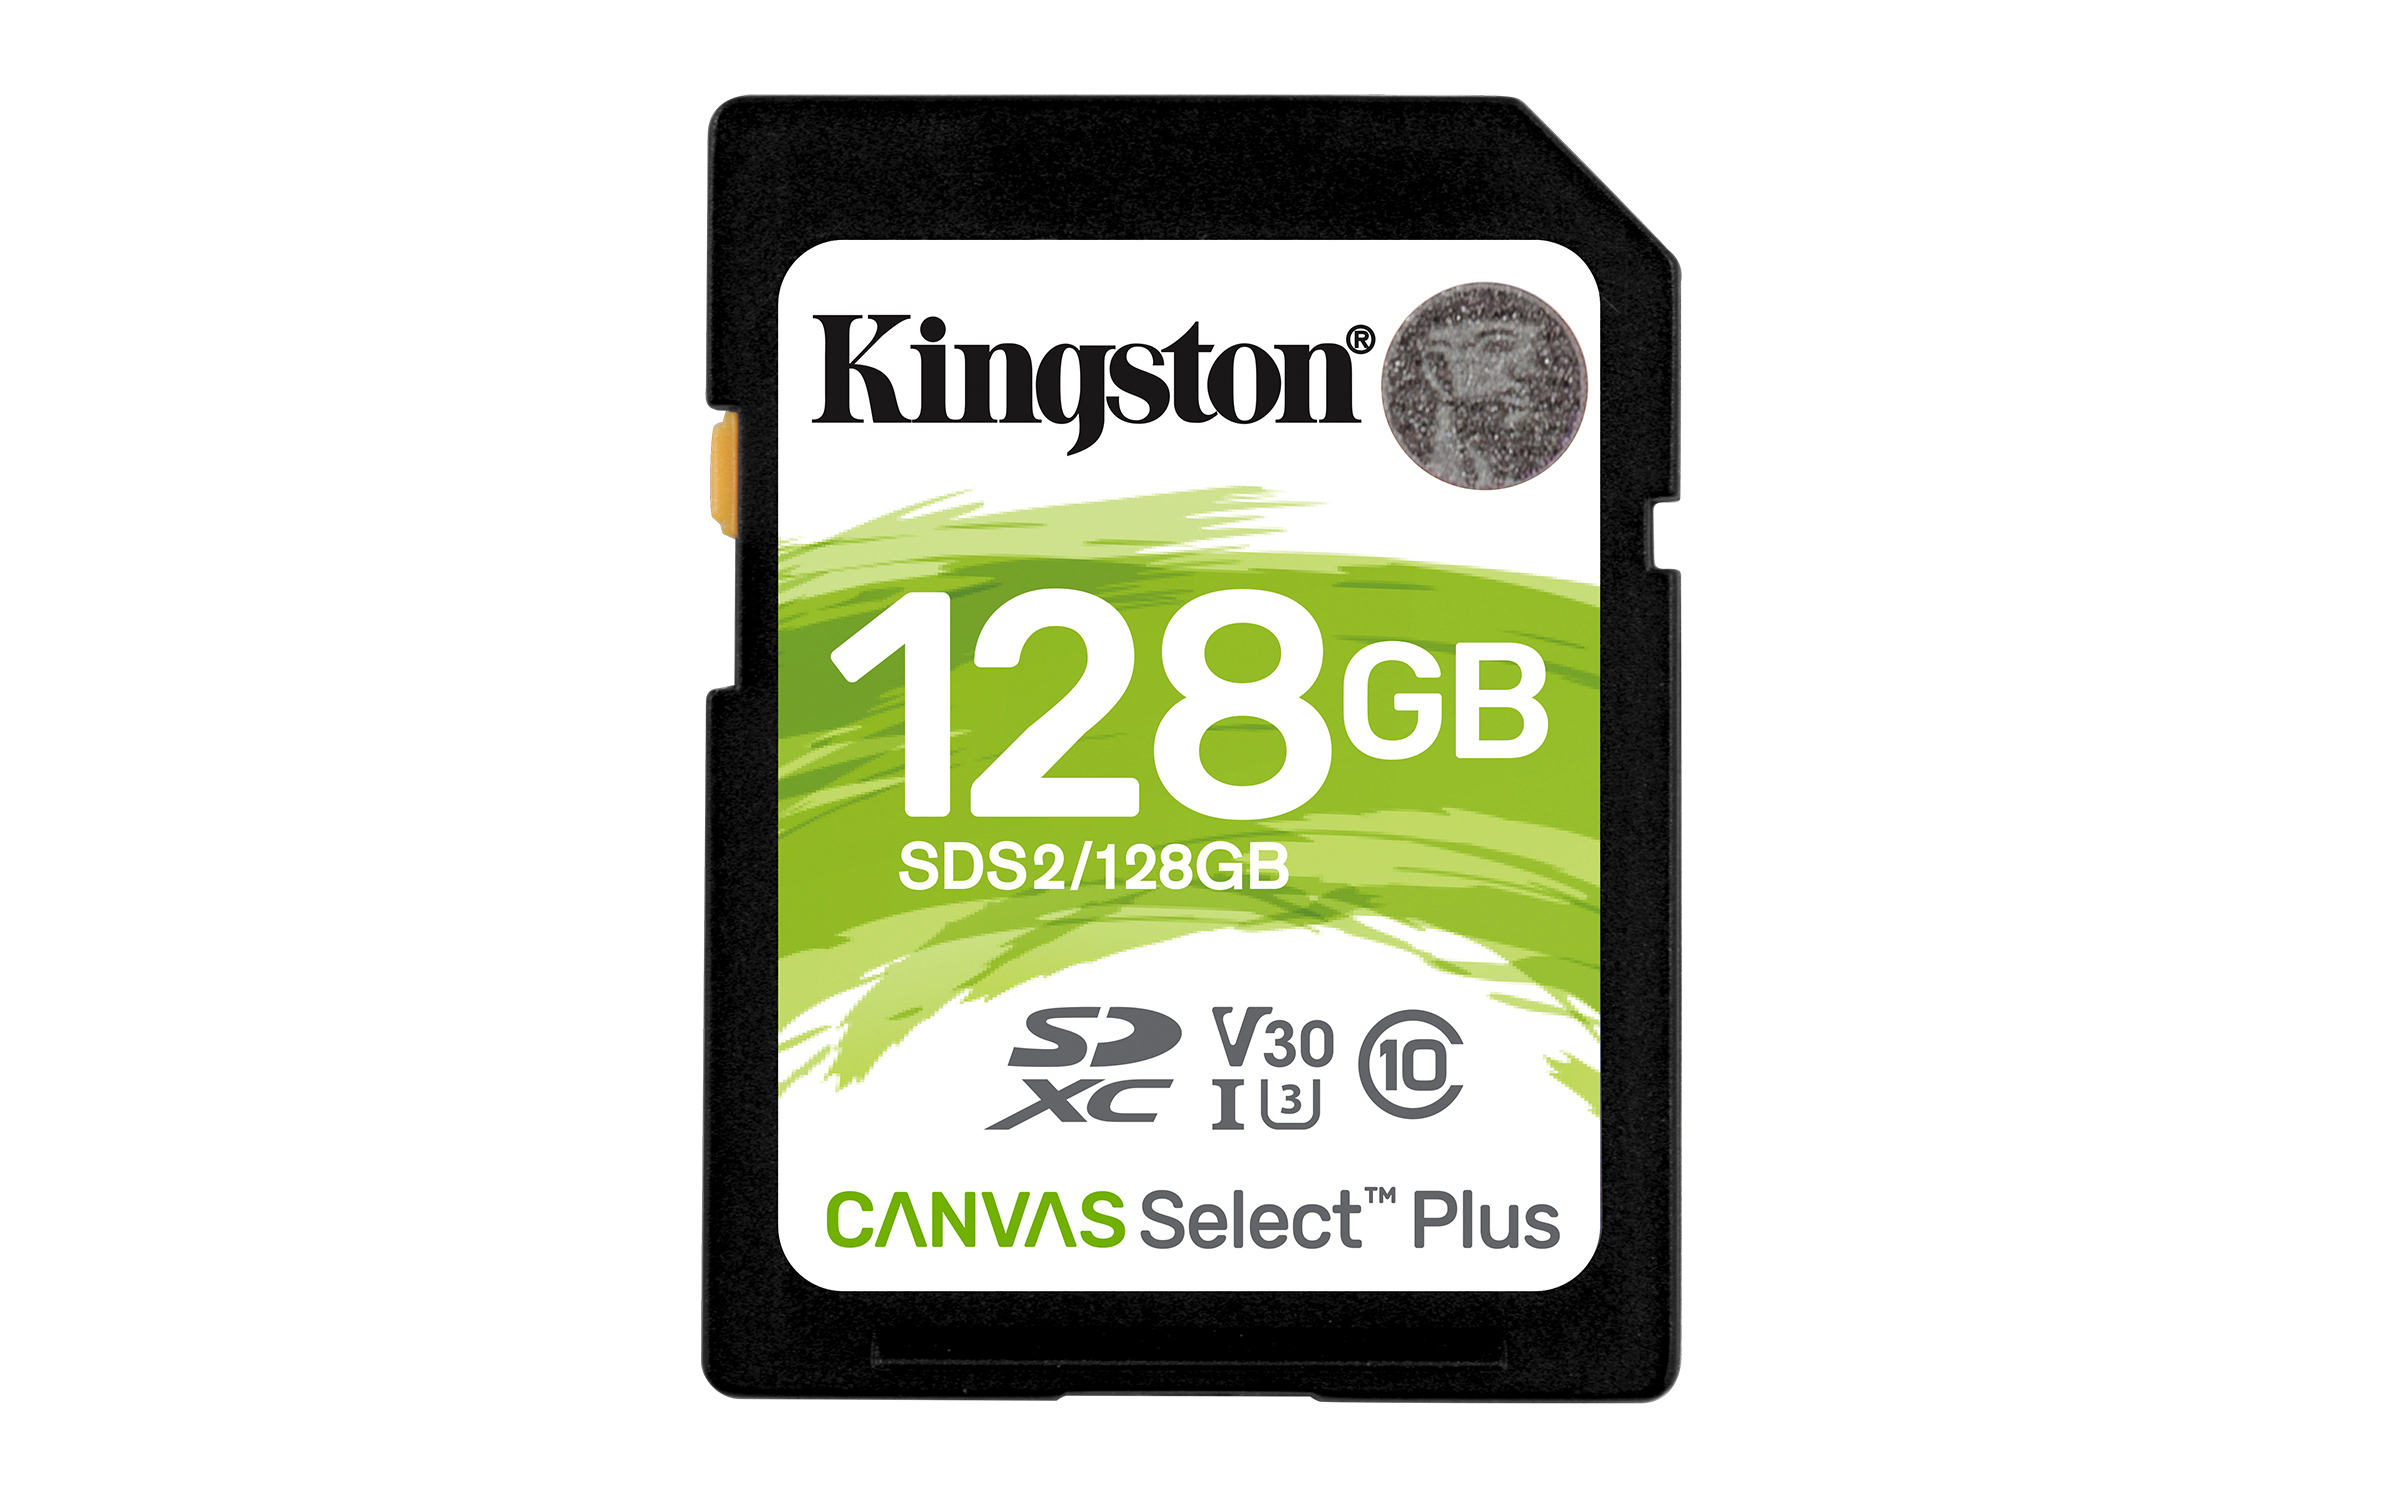 KINGSTON TARJETA SDS2 128GB